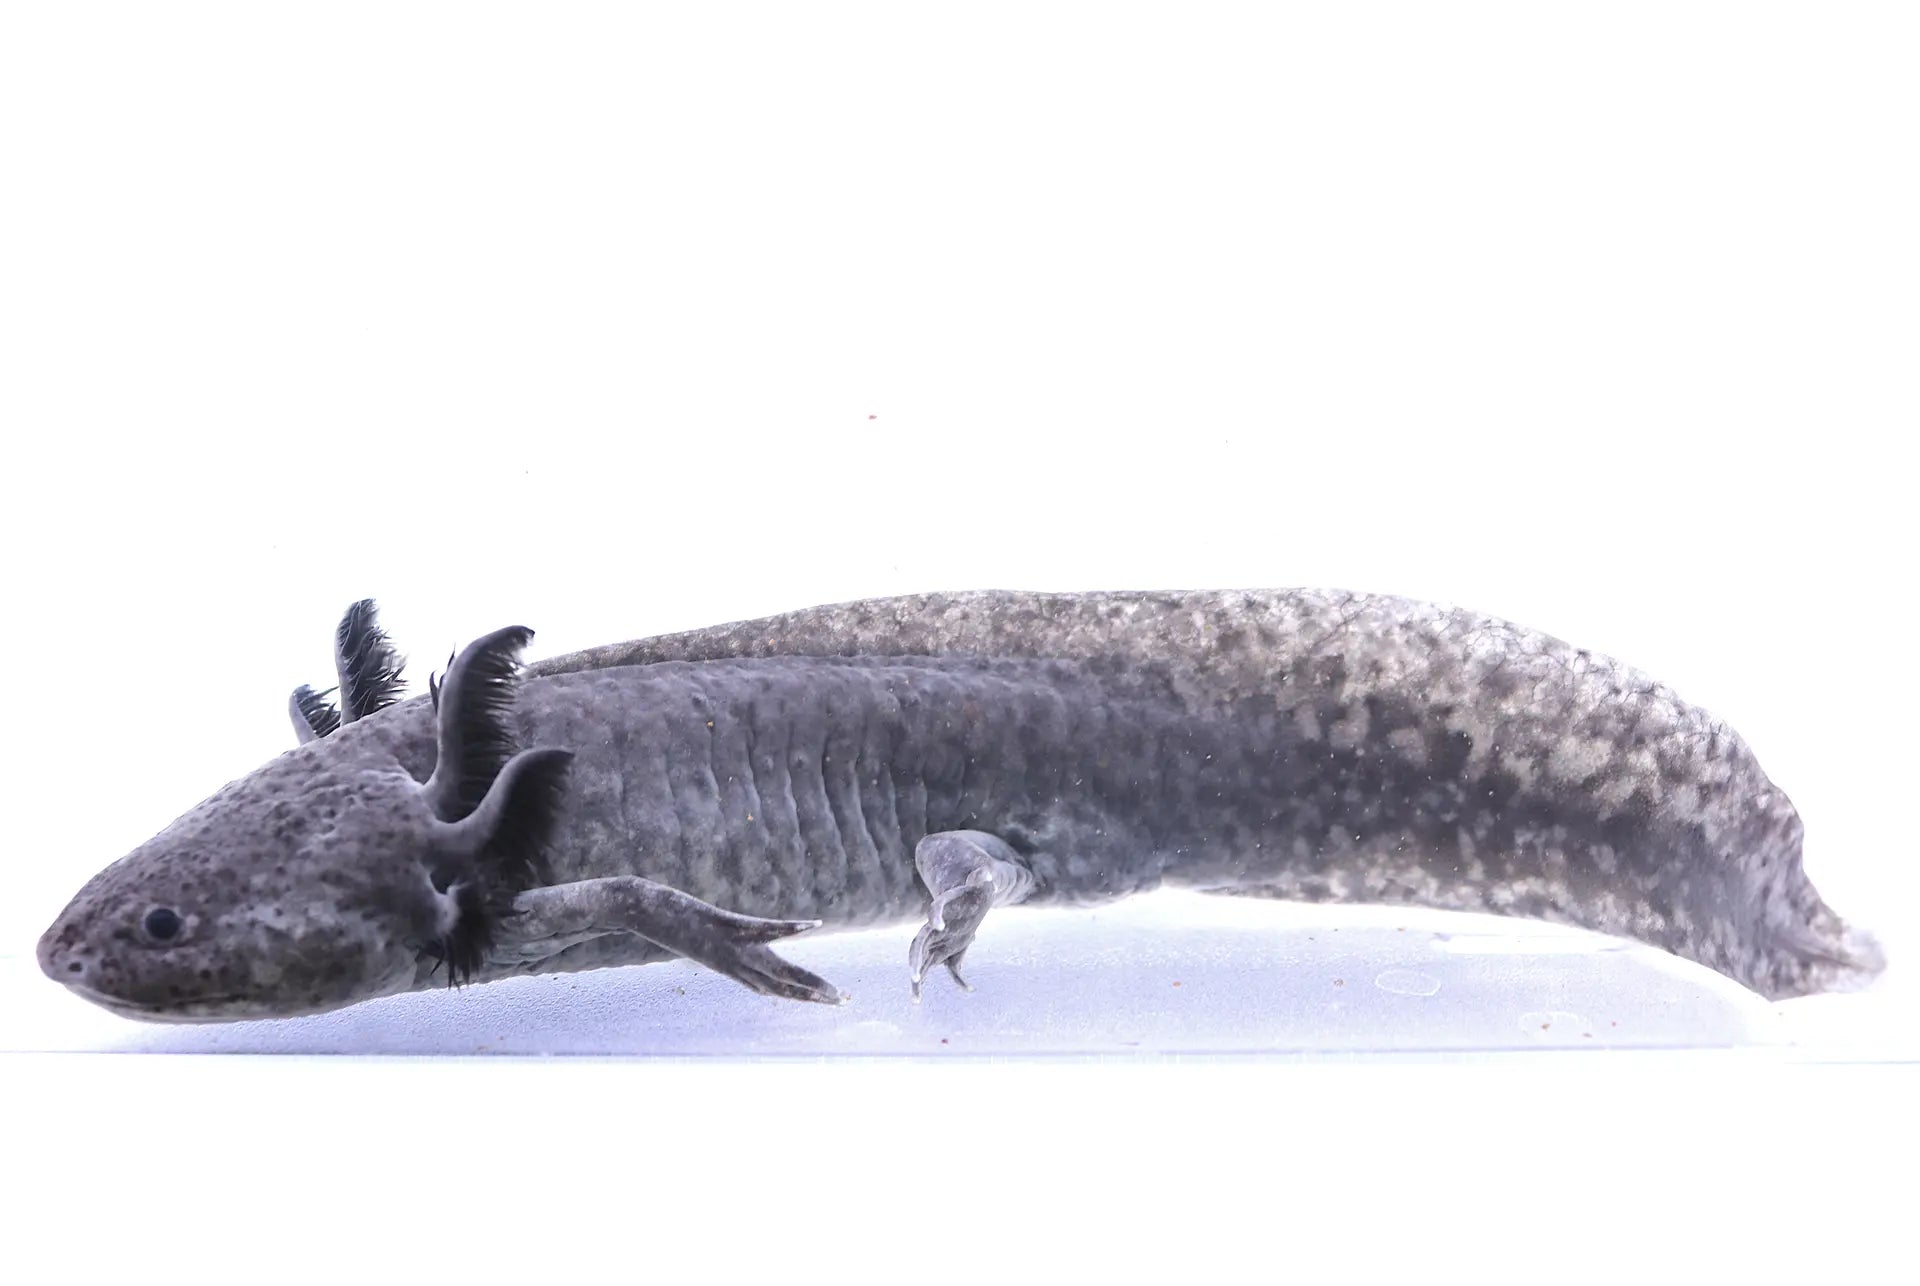 Axanthic Axolotl